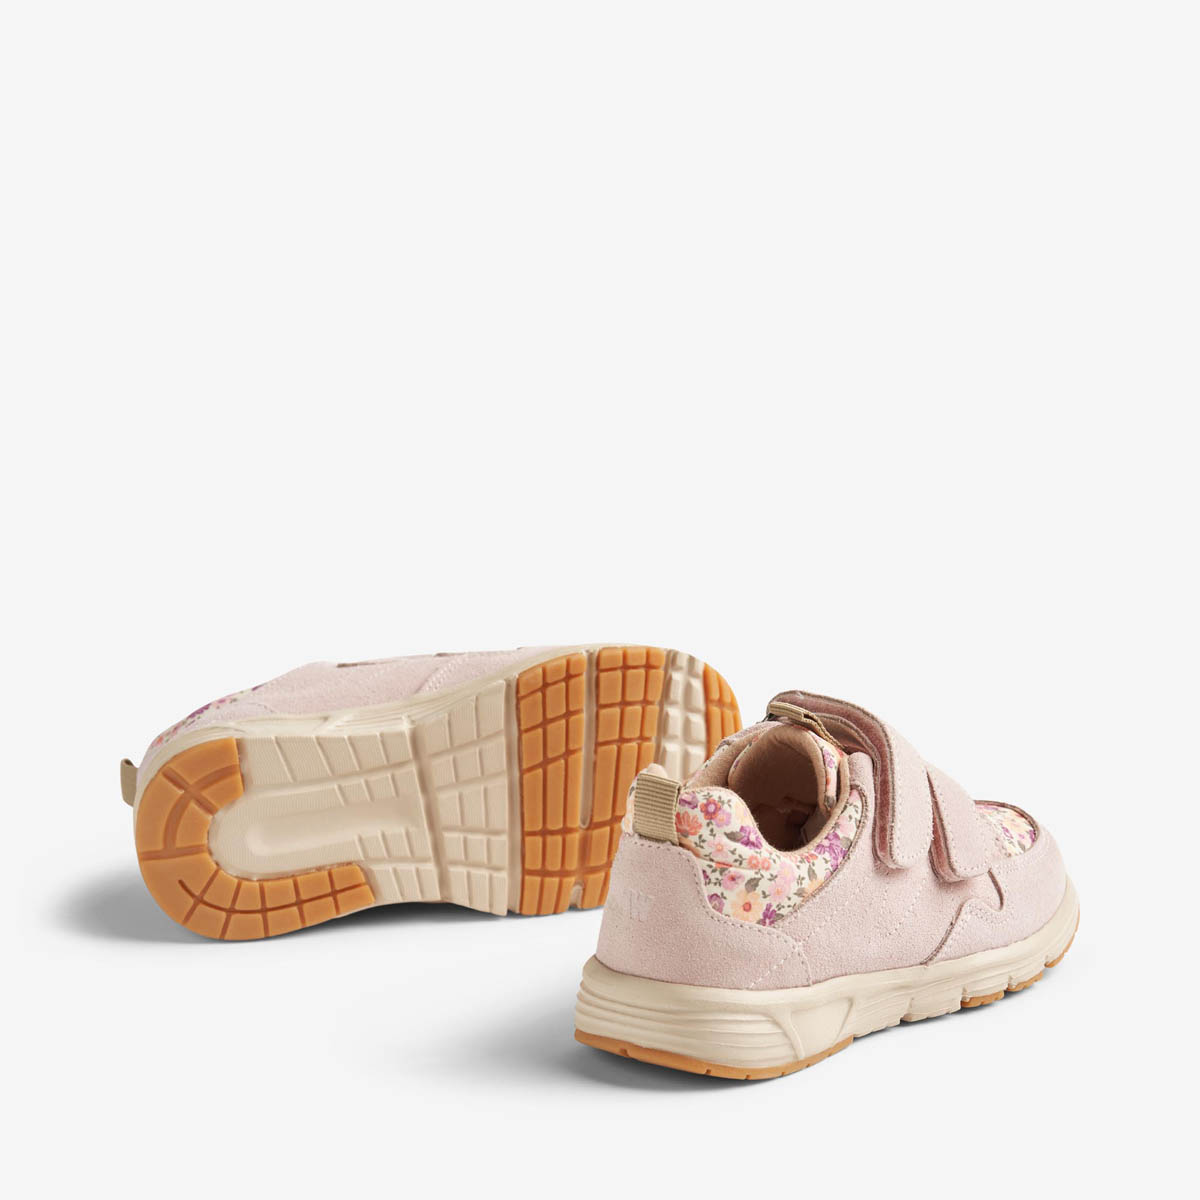 Packshot produktbillede af Wheat sneakers sko